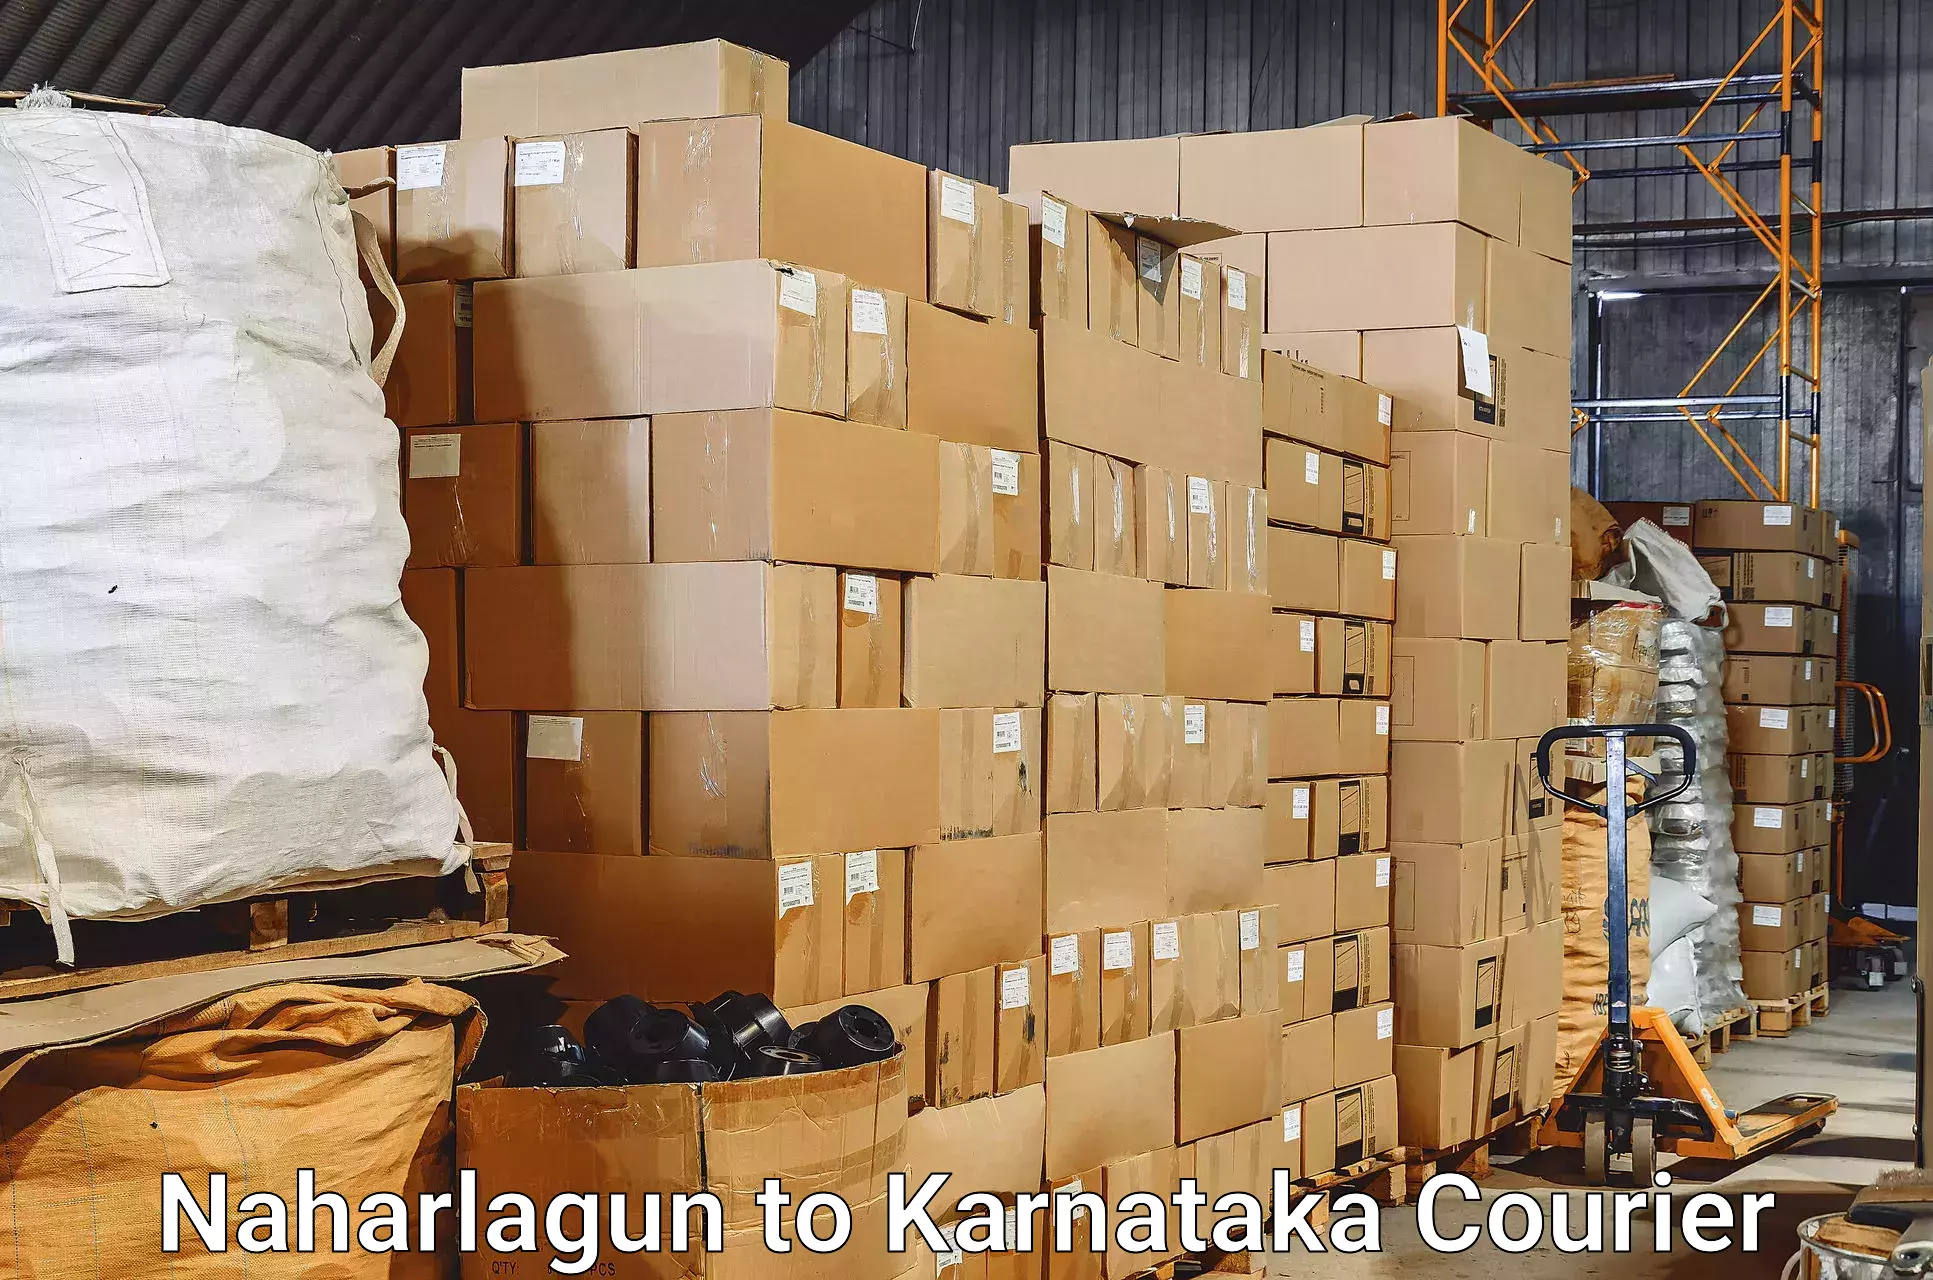 Baggage transport scheduler Naharlagun to Karnataka